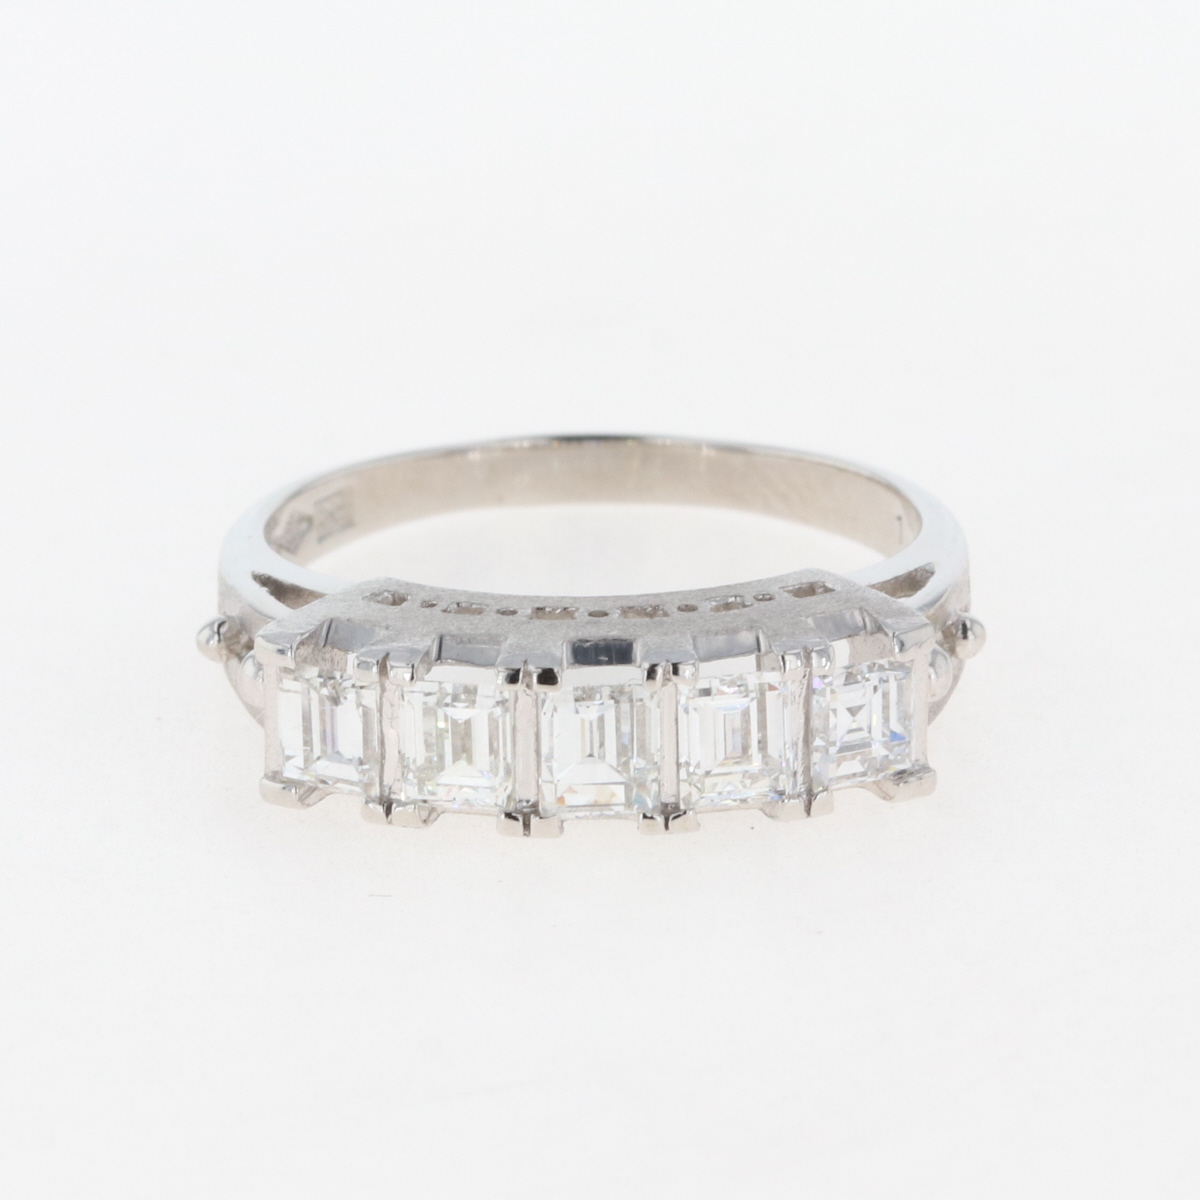  メレダイヤ デザインリング プラチナ 指輪 リング 15号 Pt850 ダイヤモンド レディース 